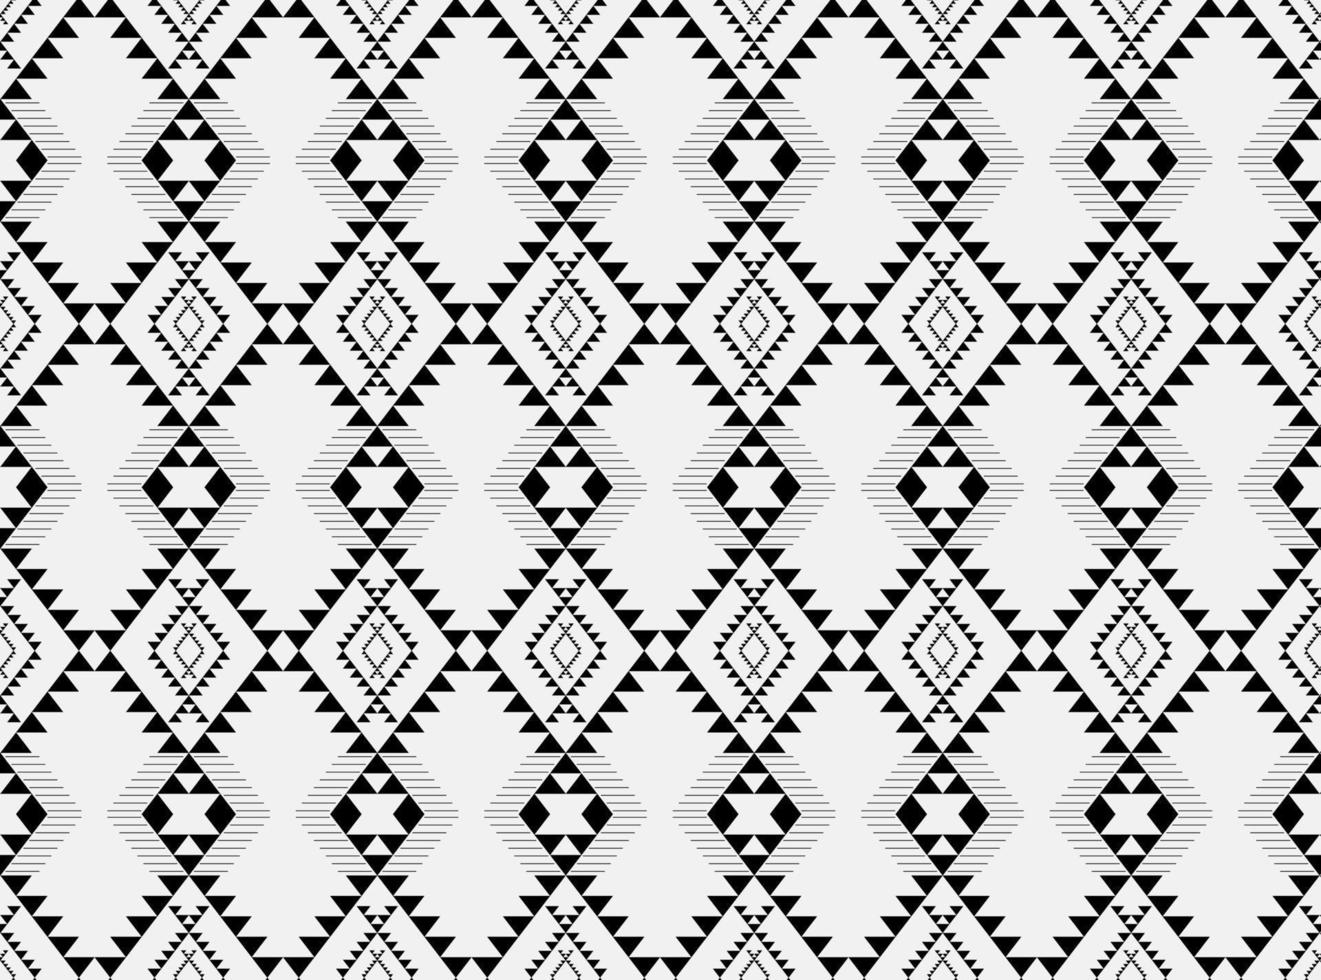 geometriskt etniskt mönster traditionellt designmönster som används för kjol, matta, tapeter, kläder, omslag, batik, tyg, kläder, mode, arkvit bakgrund vektor och illustration broderimönster